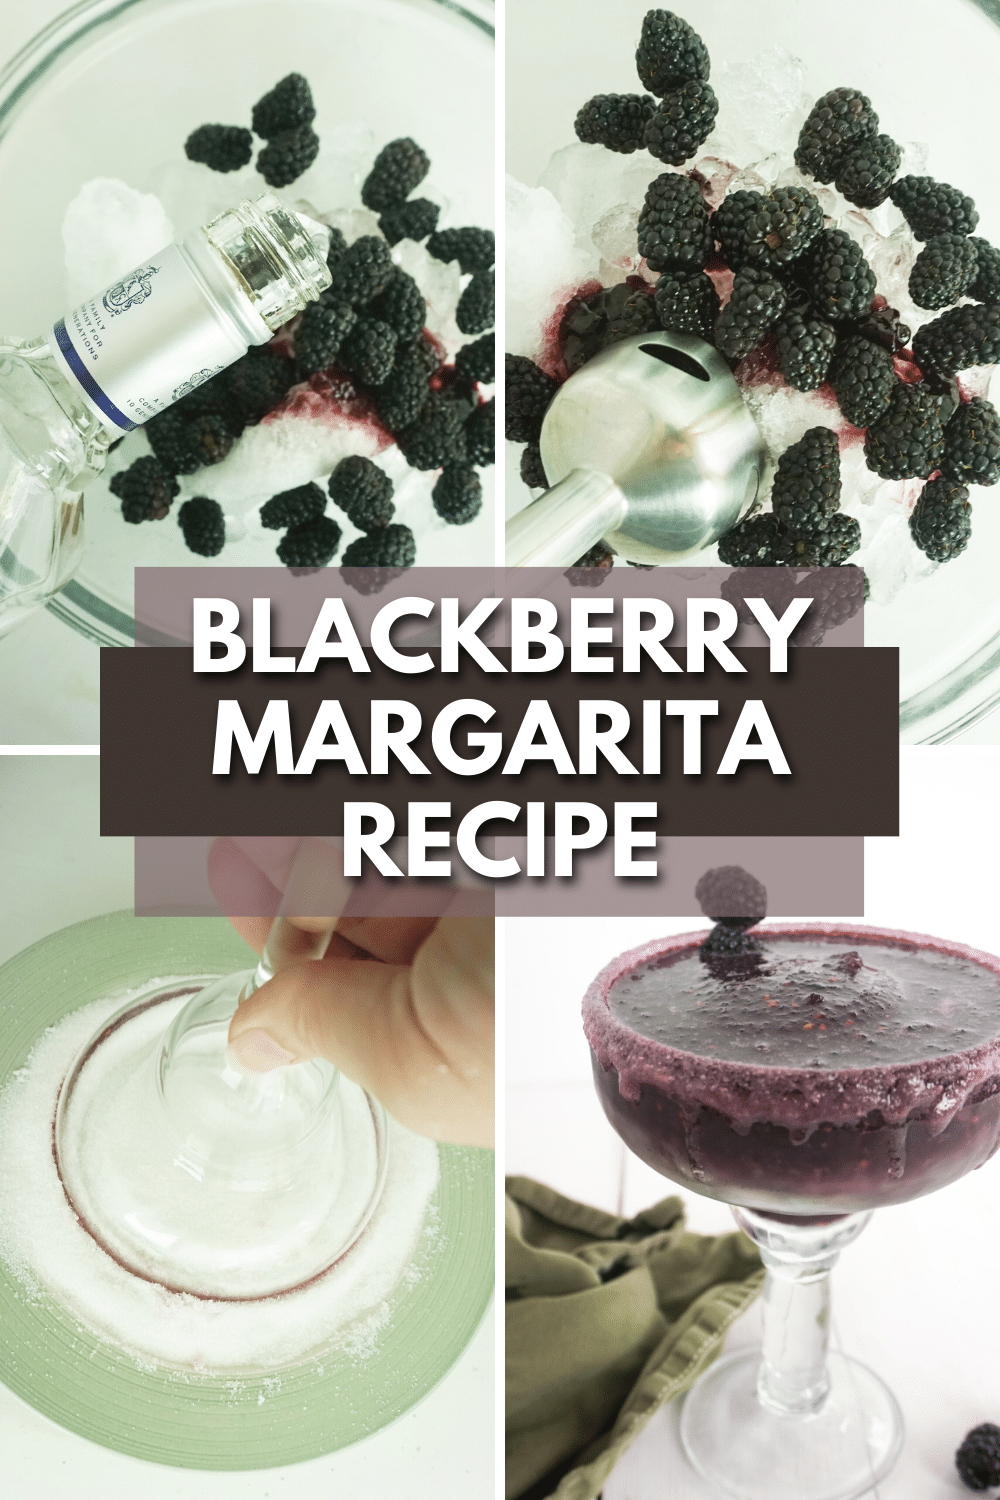 Blackberry margarita recipe.